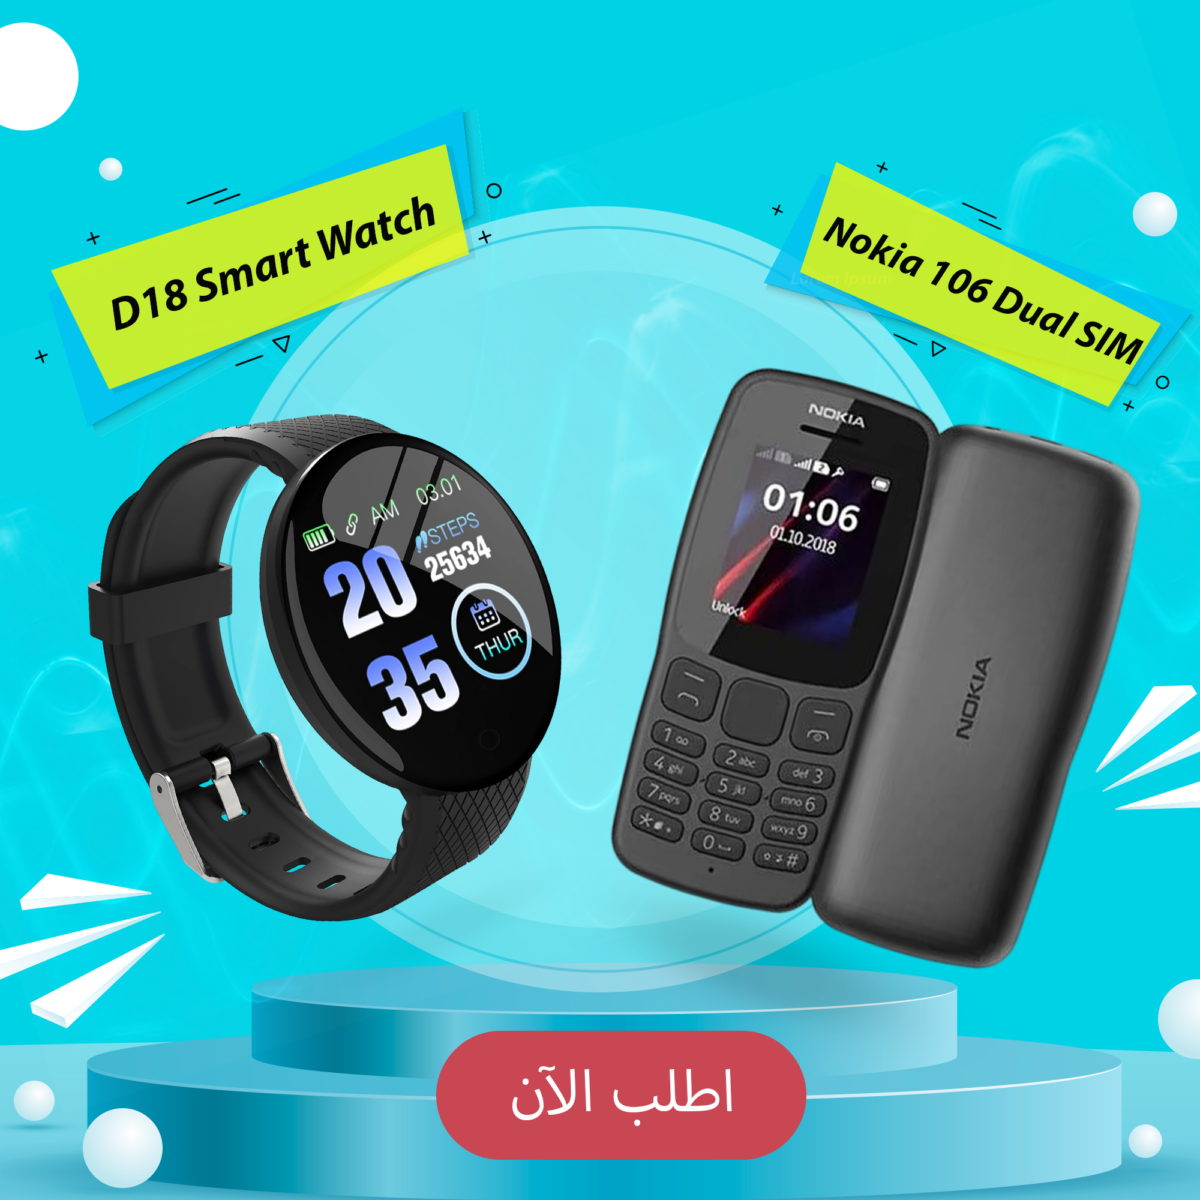 Nokia 106 Dual SIM + D18 Smart Watch